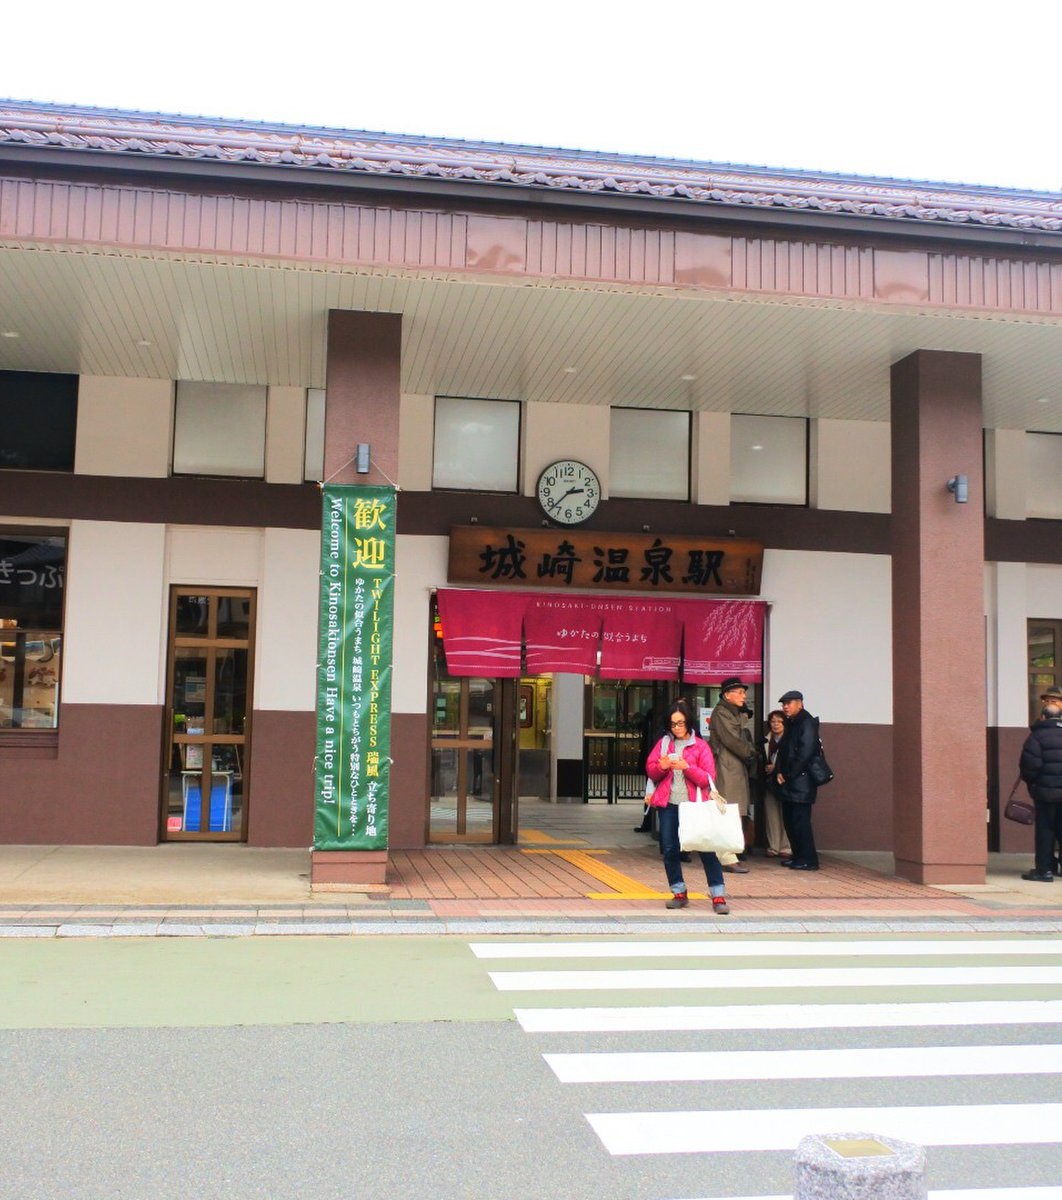 城崎温泉駅